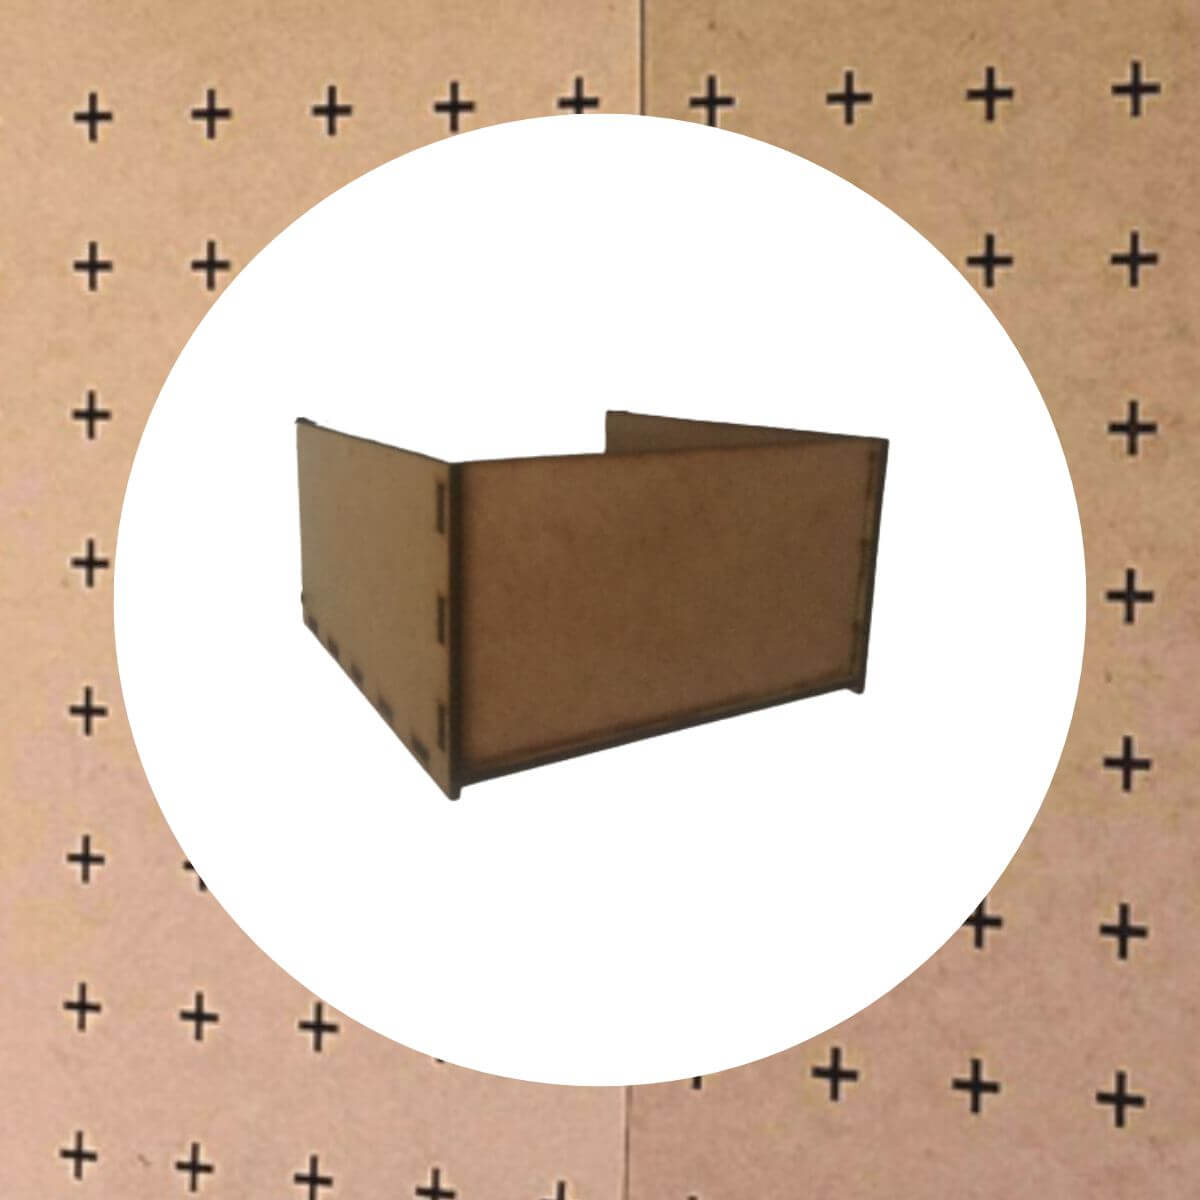 Peg Board Small Storage Box